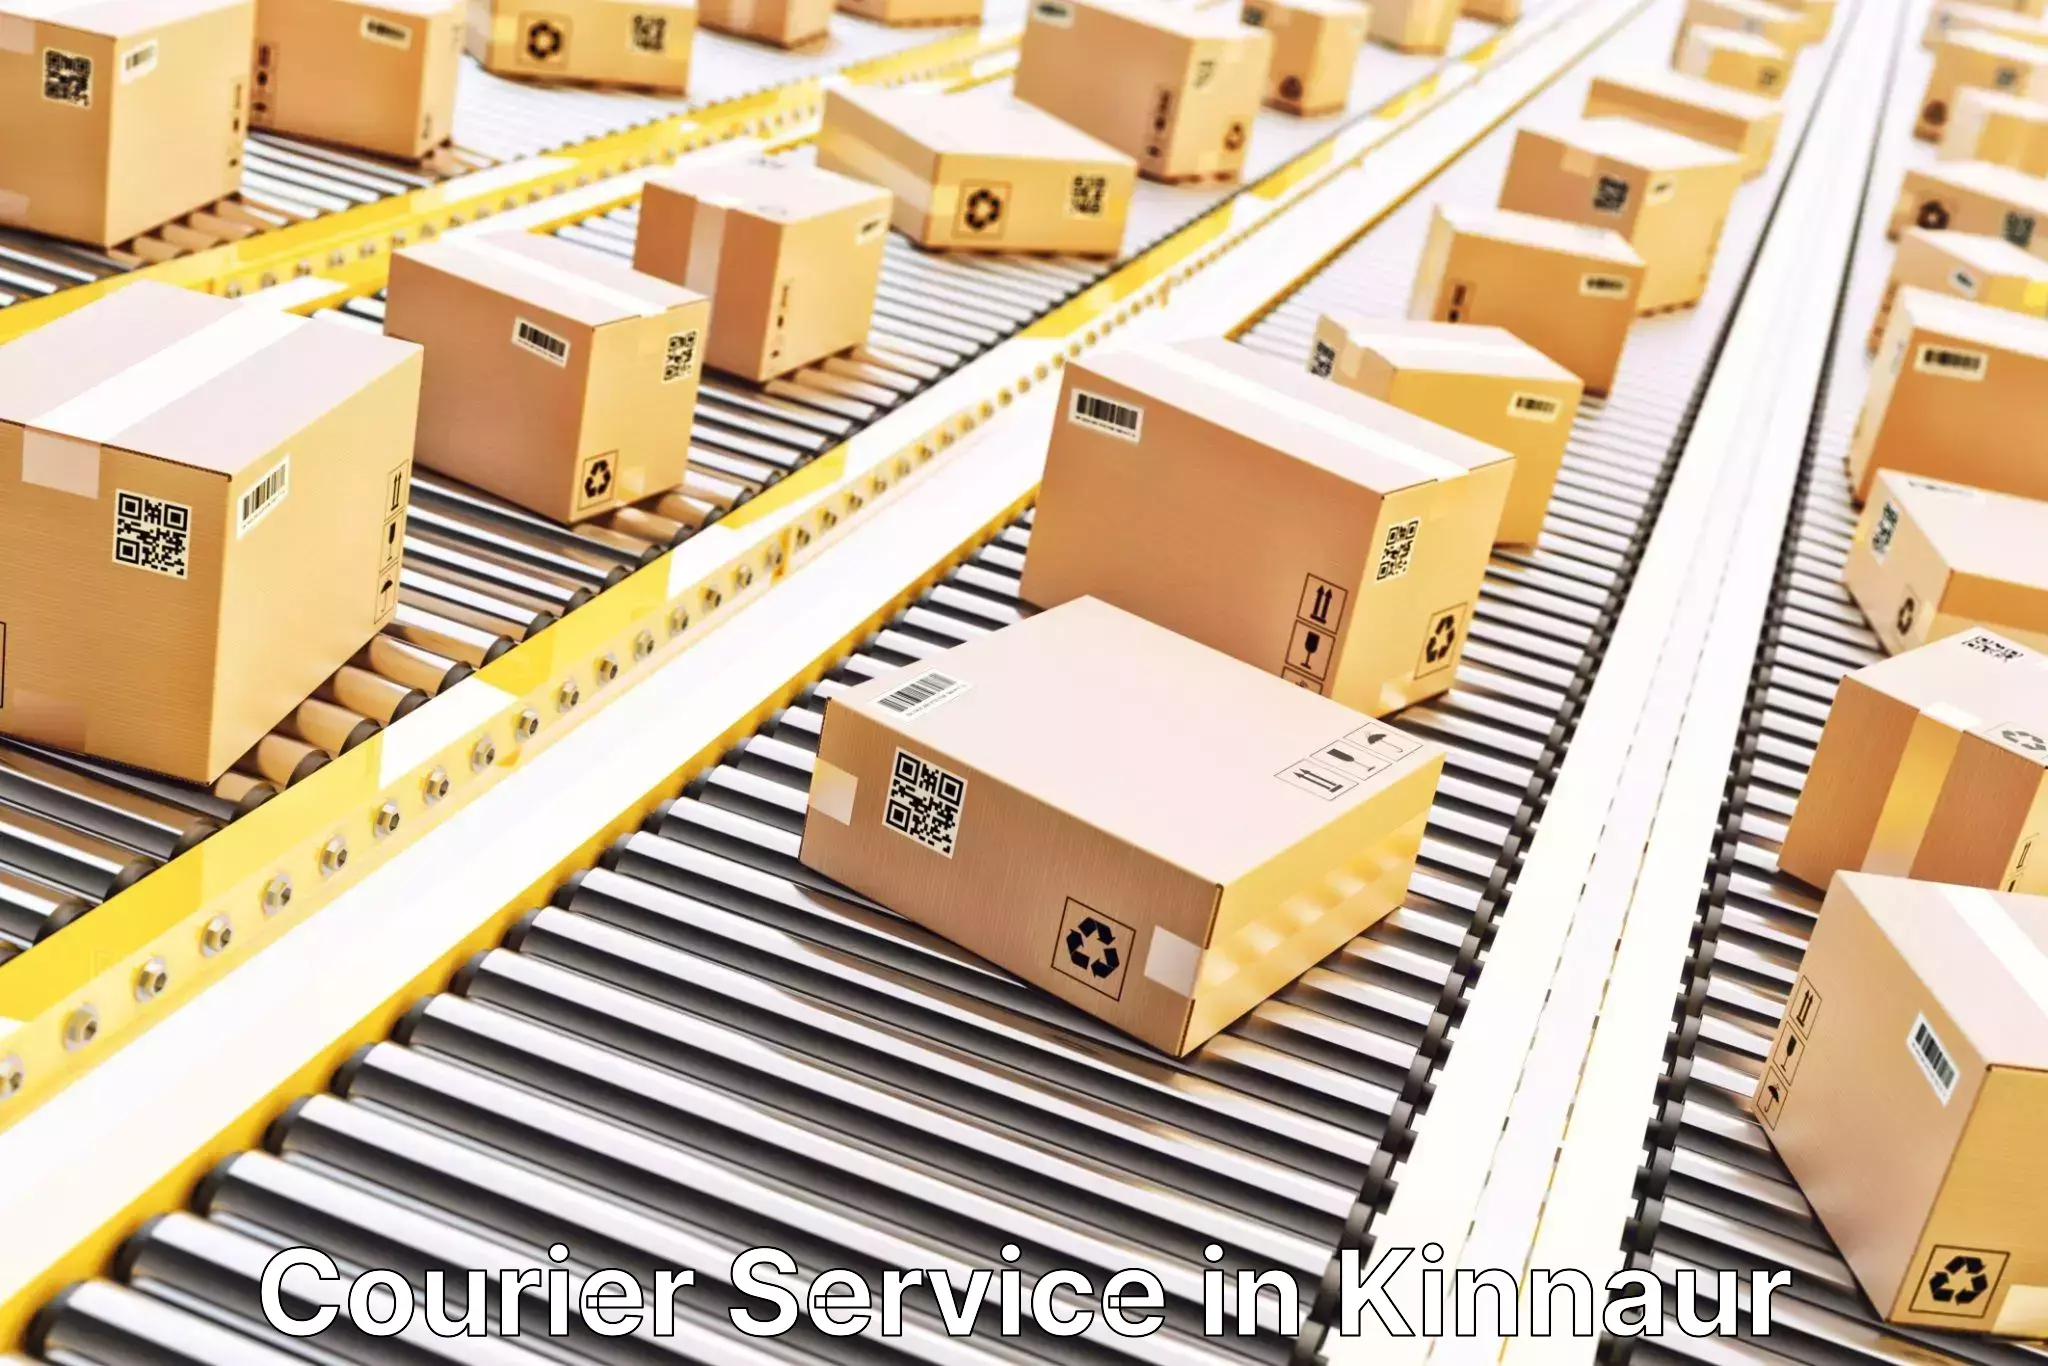 Logistics solutions in Kinnaur